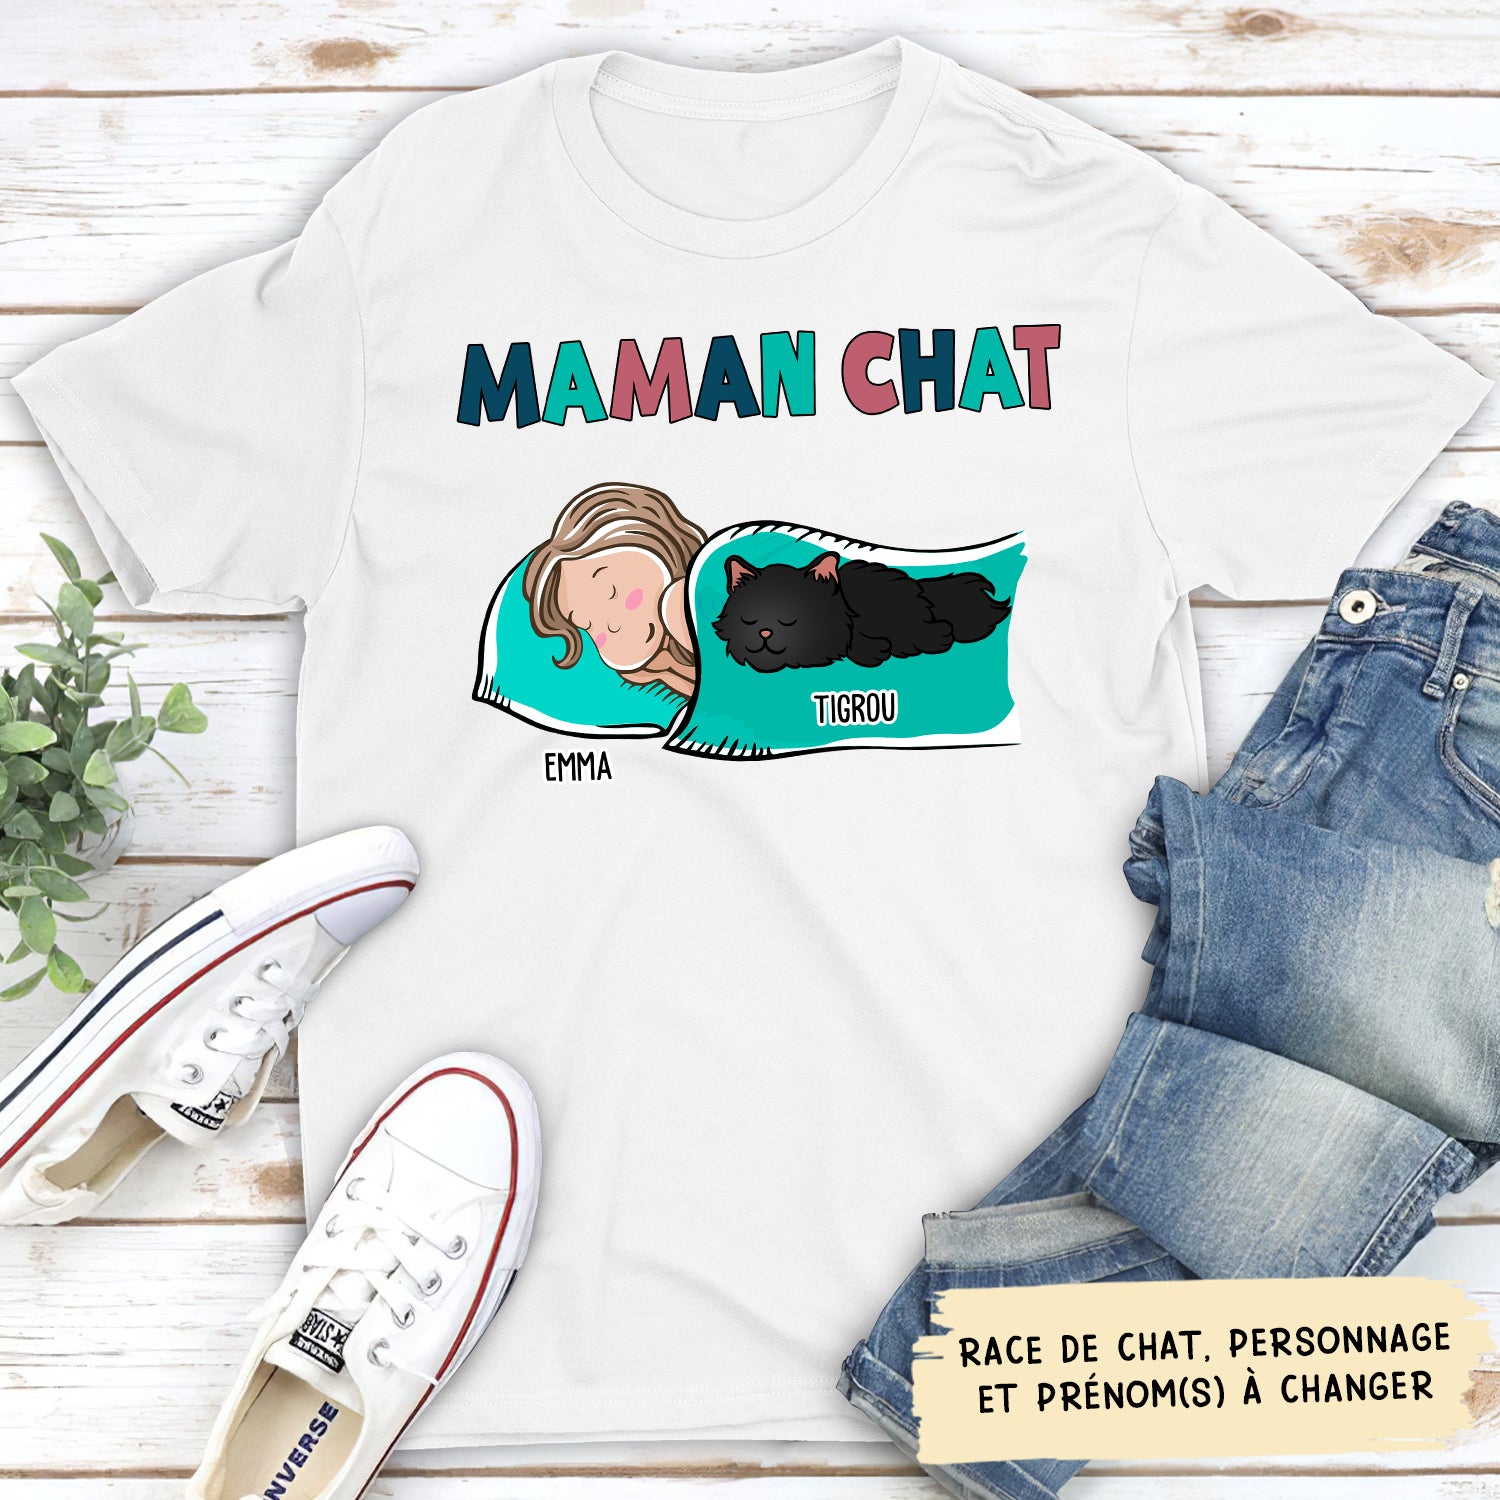 T-shirt Unisex Personnalisé - Maman/ Papa Chat